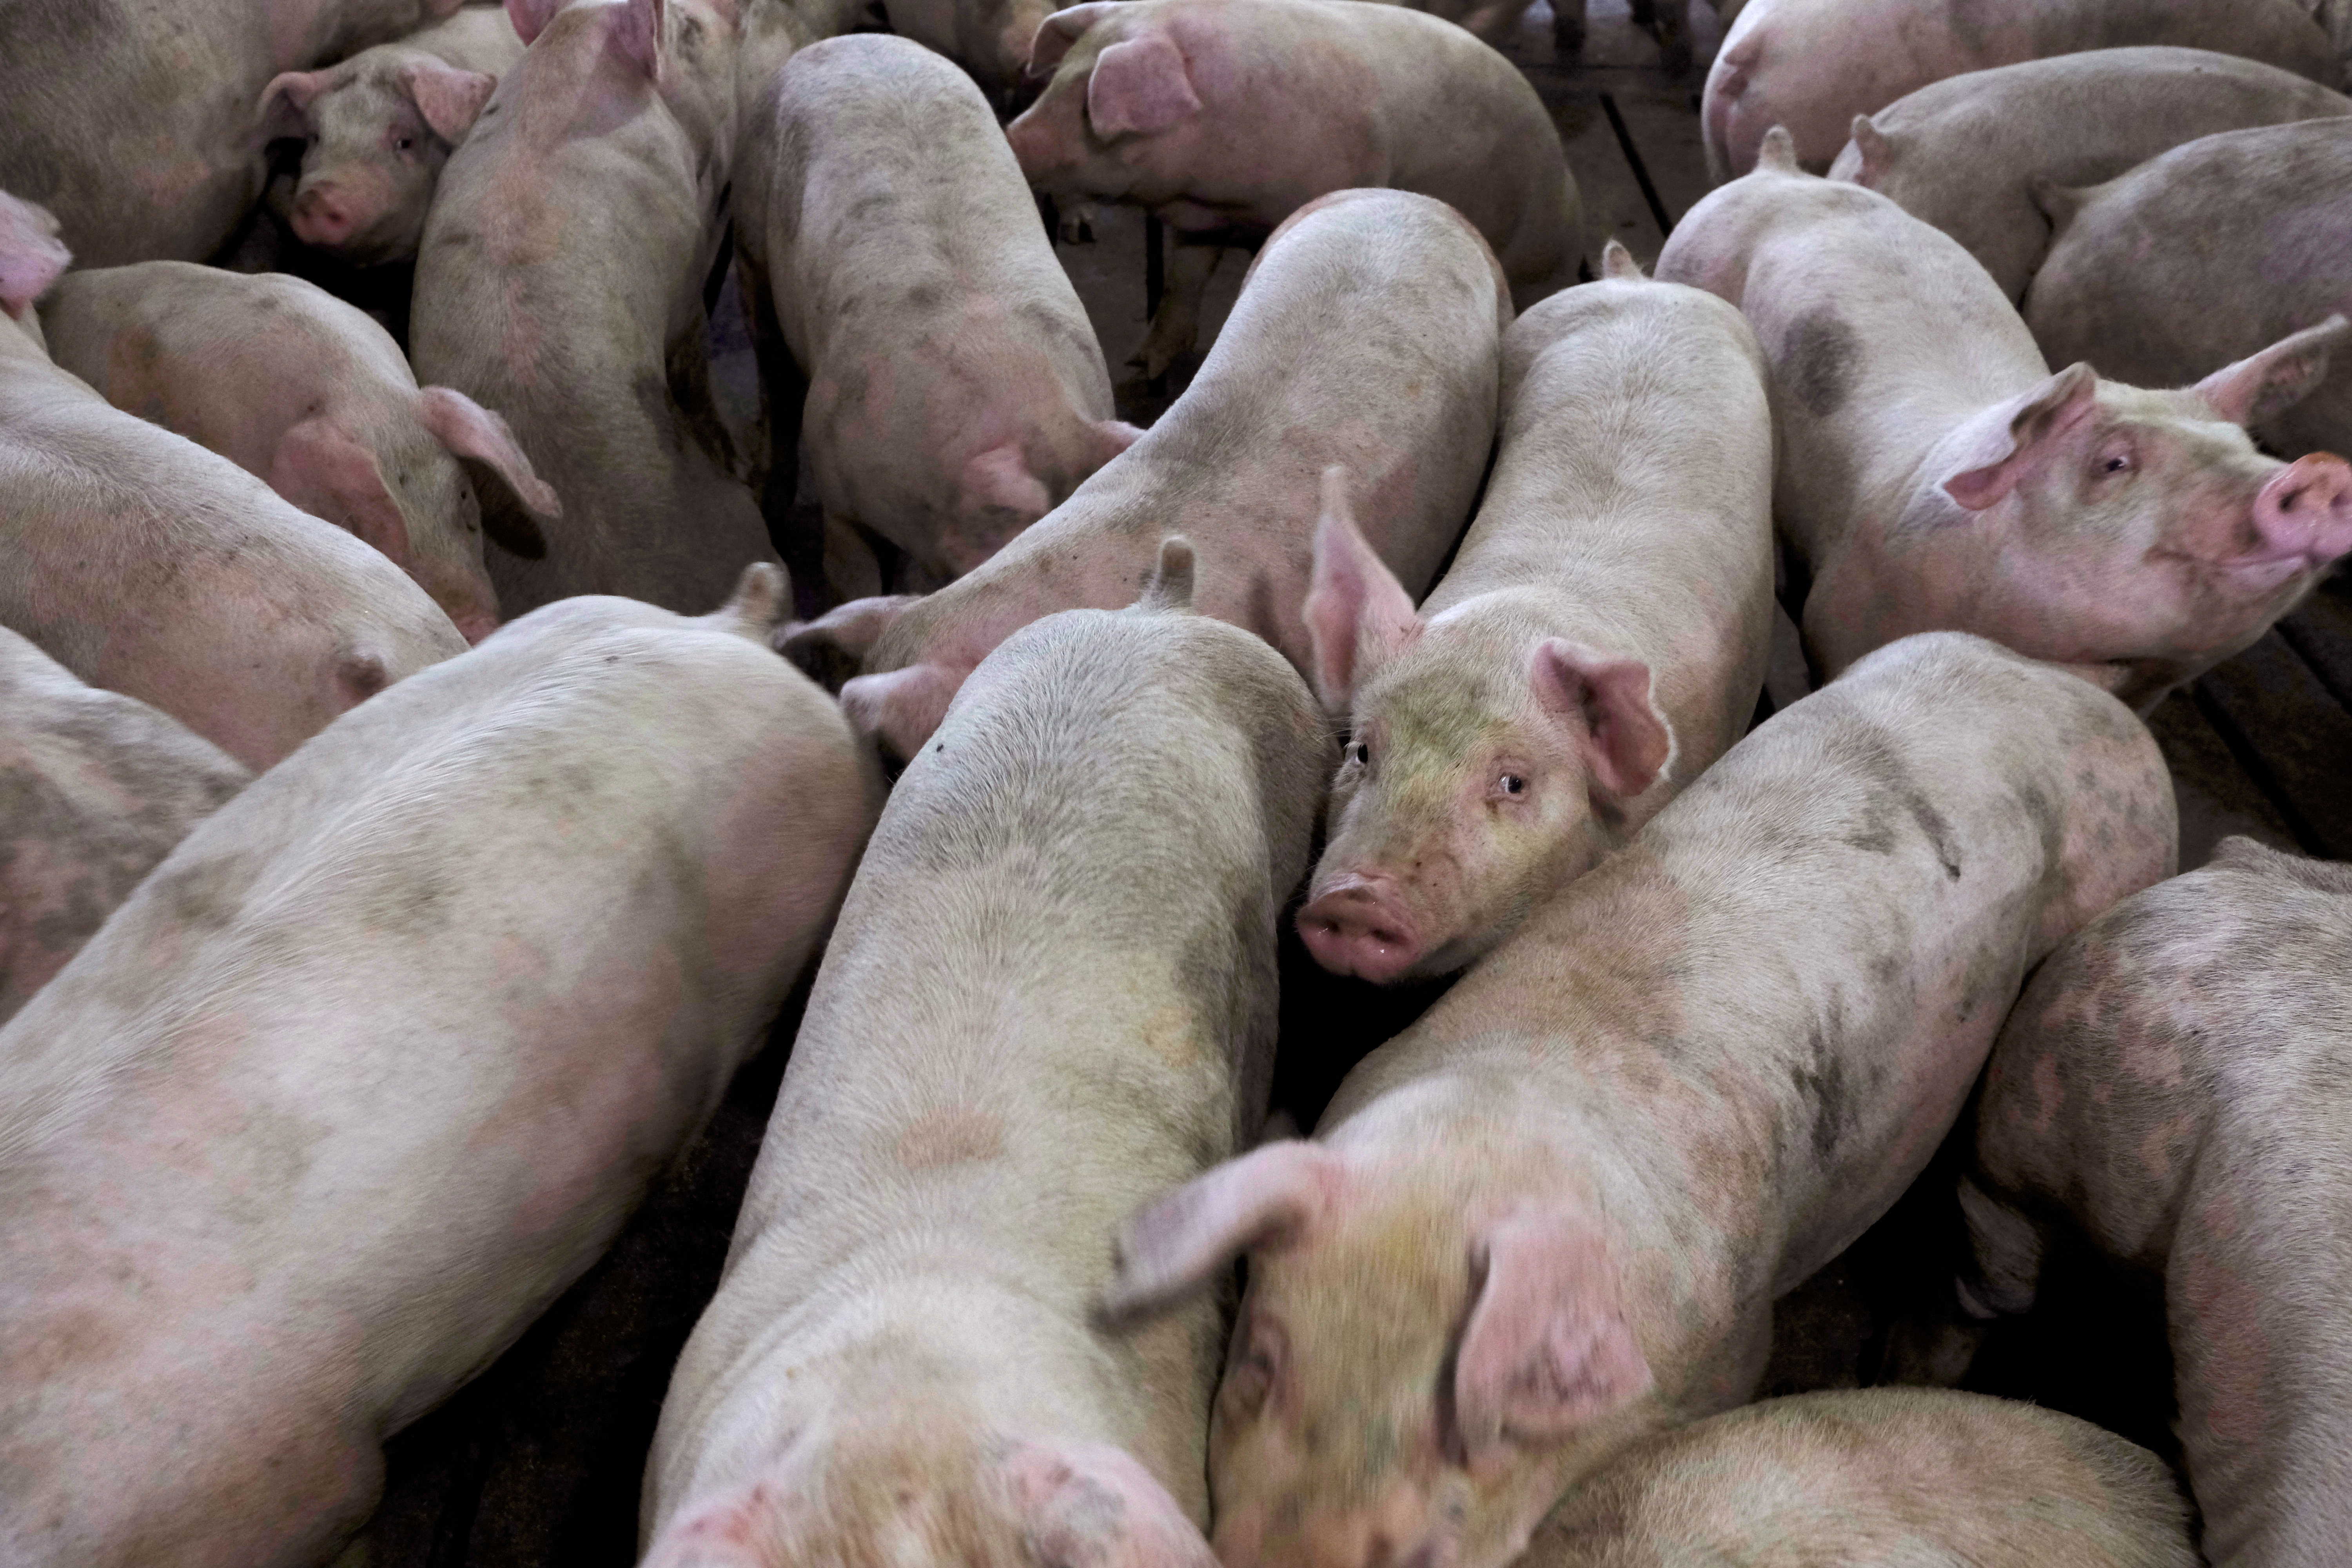 pork industry under siege